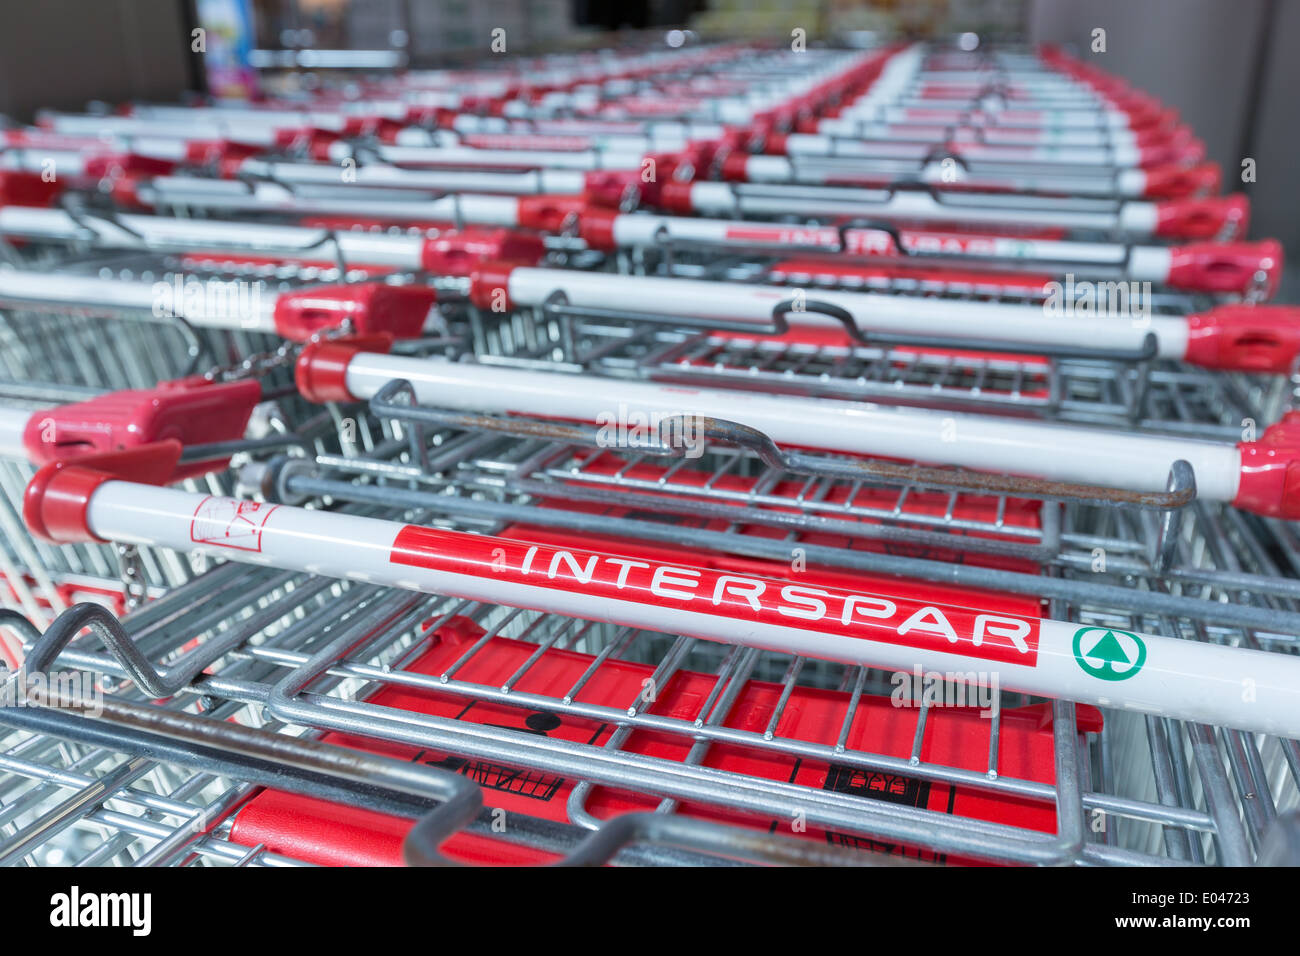 Einkaufswagen von Interspar Supermarkt in Reihen Stockfotografie - Alamy